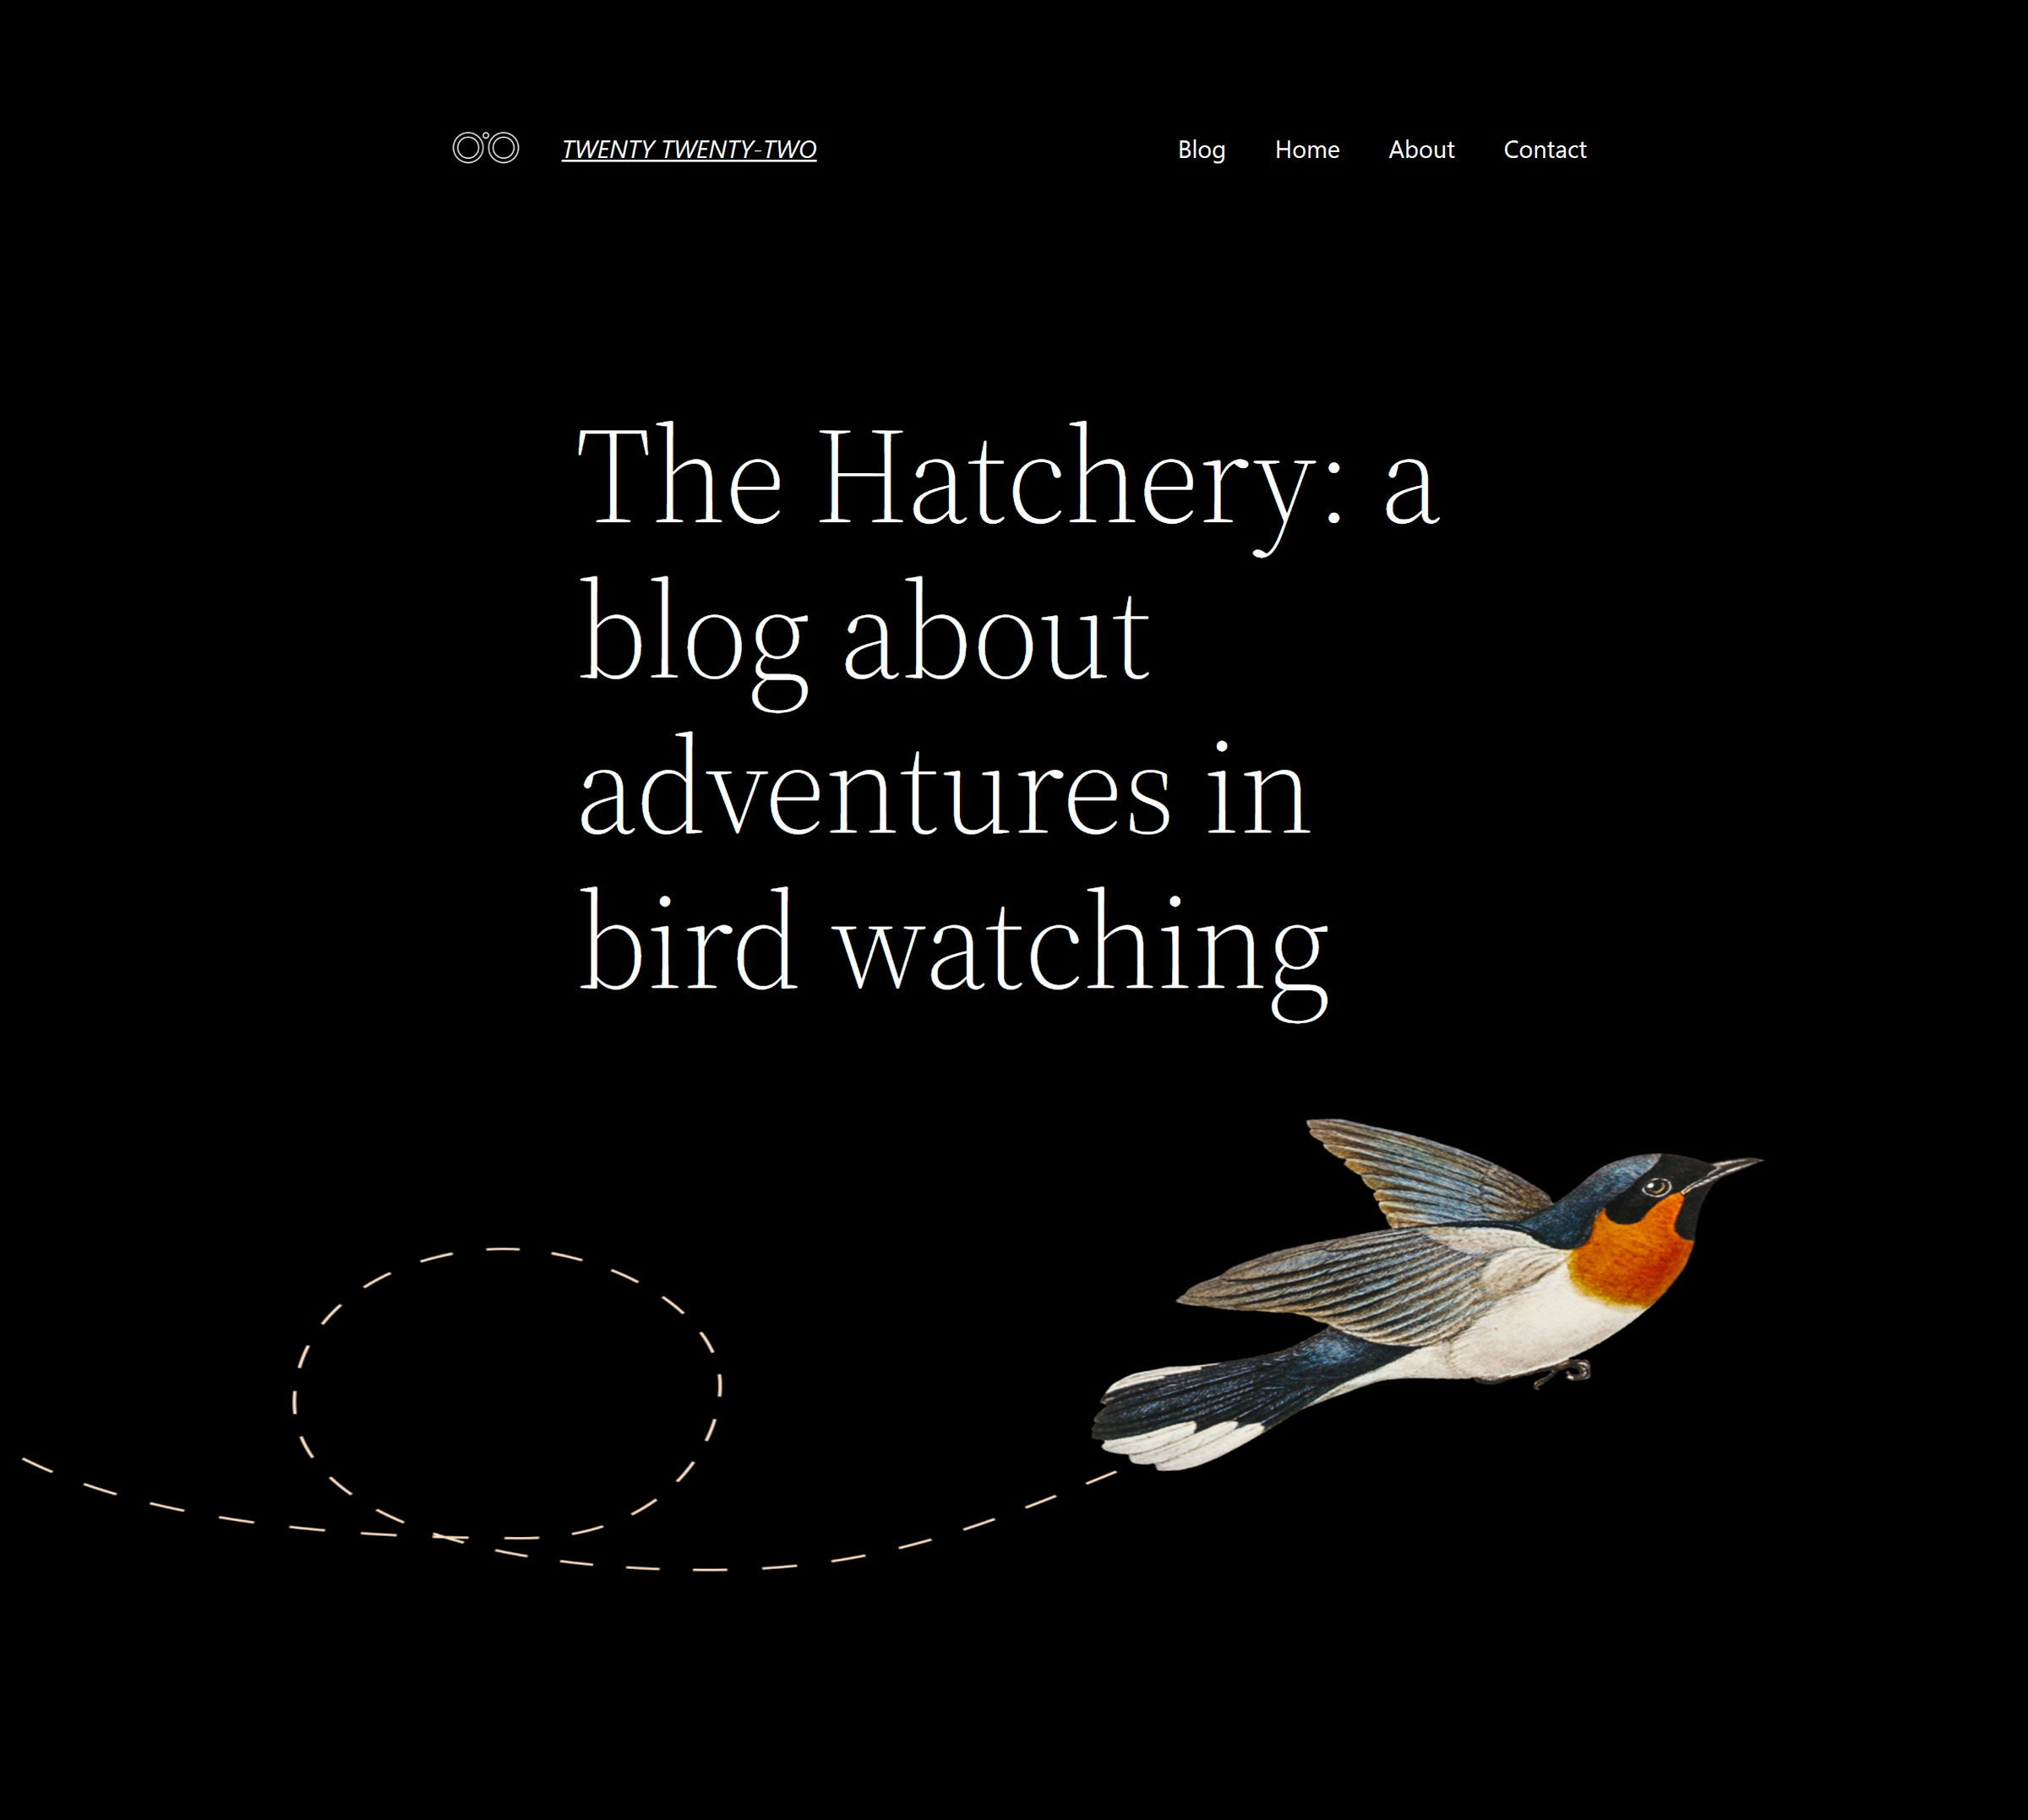 Informazioni sul design della pagina con logo, titolo e menu in alto.  Segue una grande sezione introduttiva e l'immagine di un uccello.